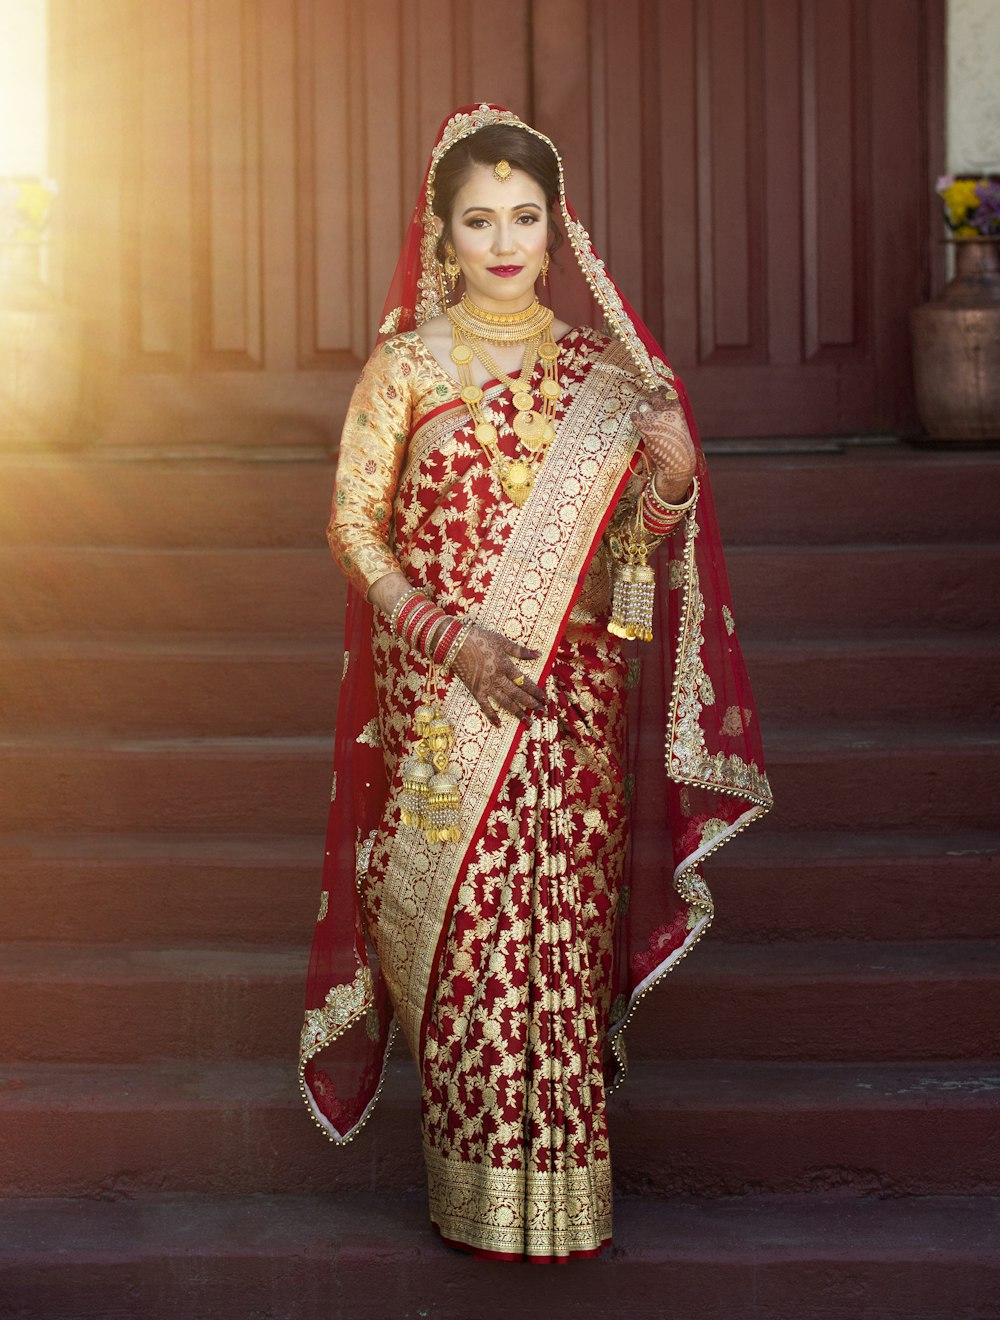 Frau in rotem und braunem Sari auf braunem Holzboden